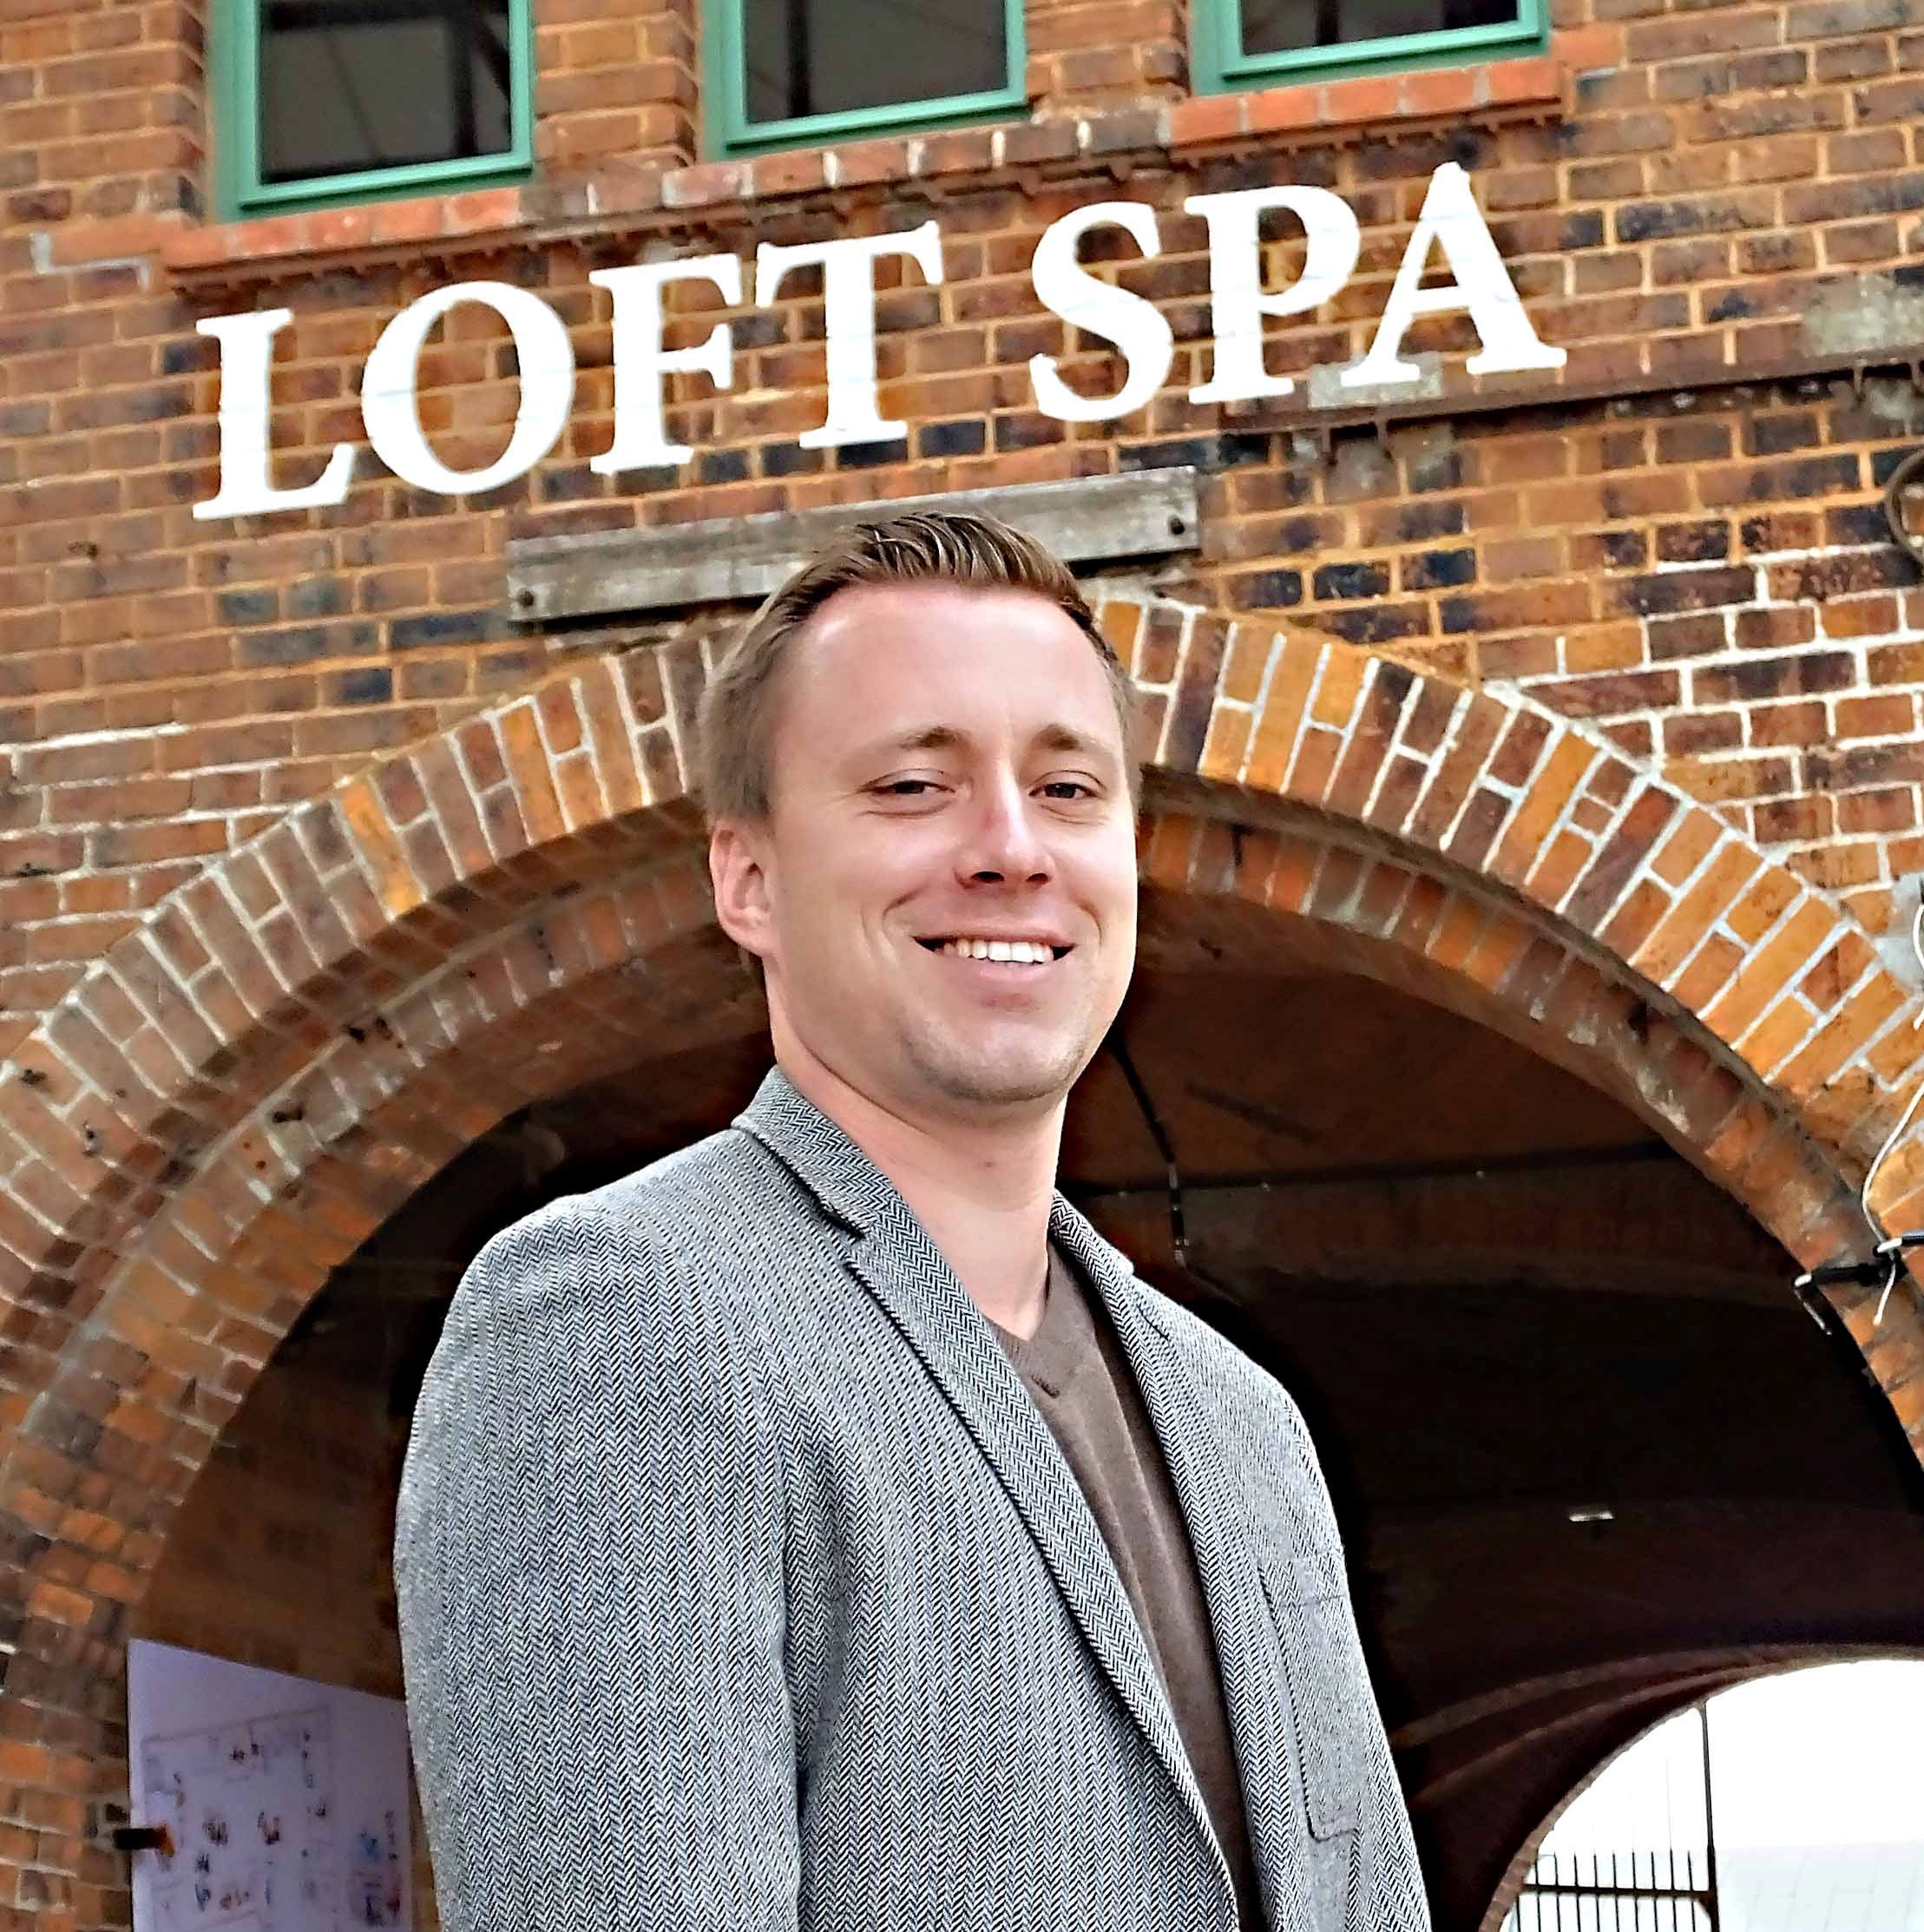 Zusammen mit seinem Vater, dem verdienstvollen Firmengründer Lutz Lange, ist auch Jan Lange geschäftsführender Gesellschafter des Familienunternehmens Hotel & Brauhaus Alte Ölmühle. Über den neuen riesigen Soft Spa-Bereich ist er besonders stolz.

